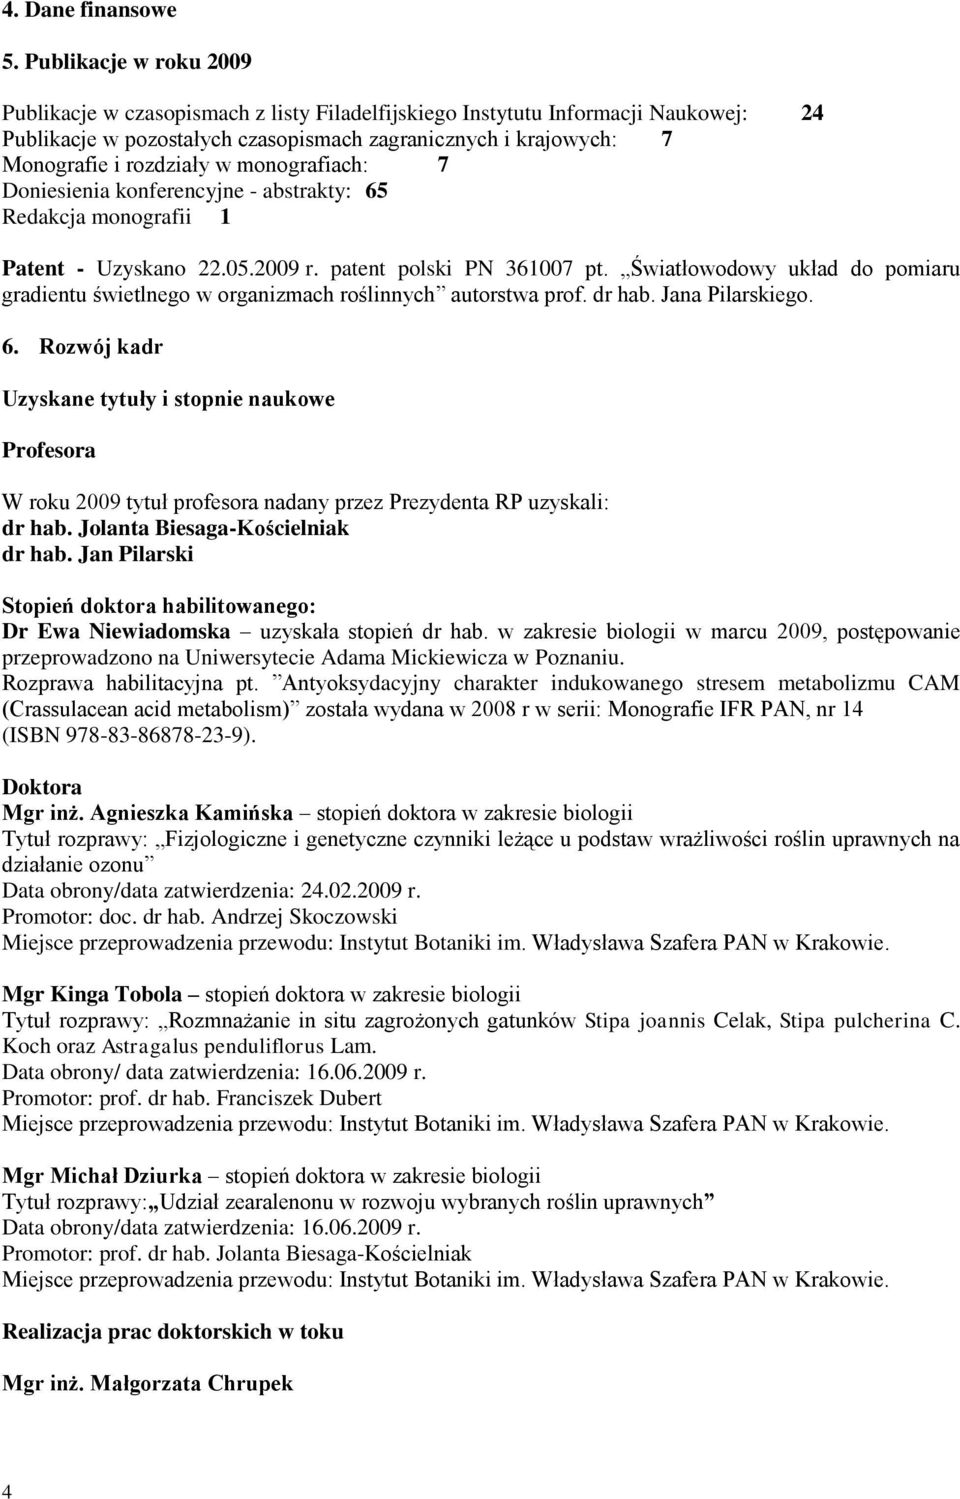 monografiach: 7 Doniesienia konferencyjne - abstrakty: 65 Redakcja monografii 1 Patent - Uzyskano 22.05.2009 r. patent polski PN 361007 pt.